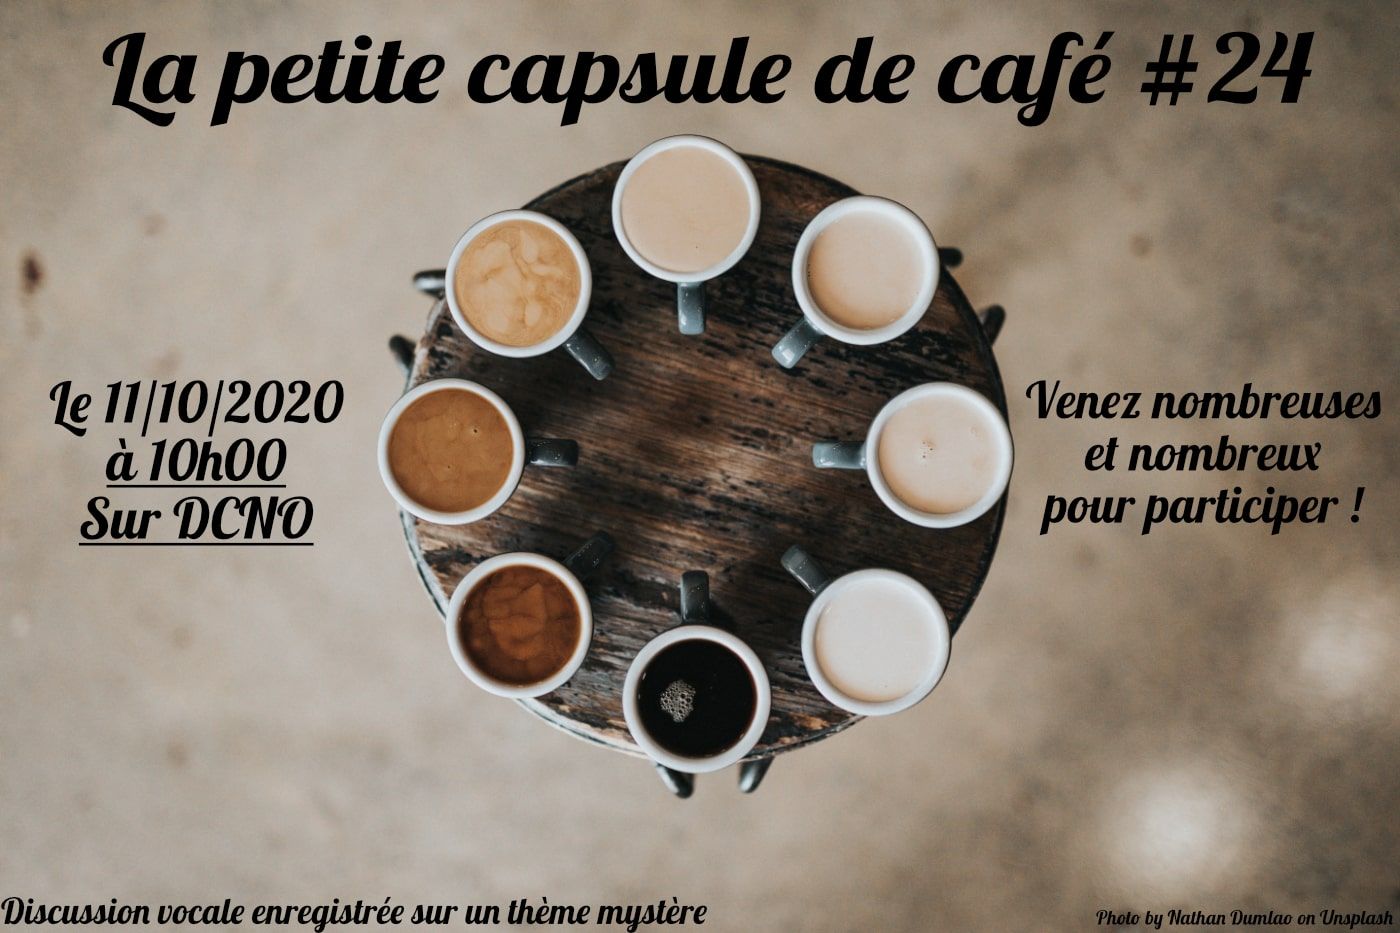 La Petite Capsule de Café #24 : L'enquête en JDR 2/2